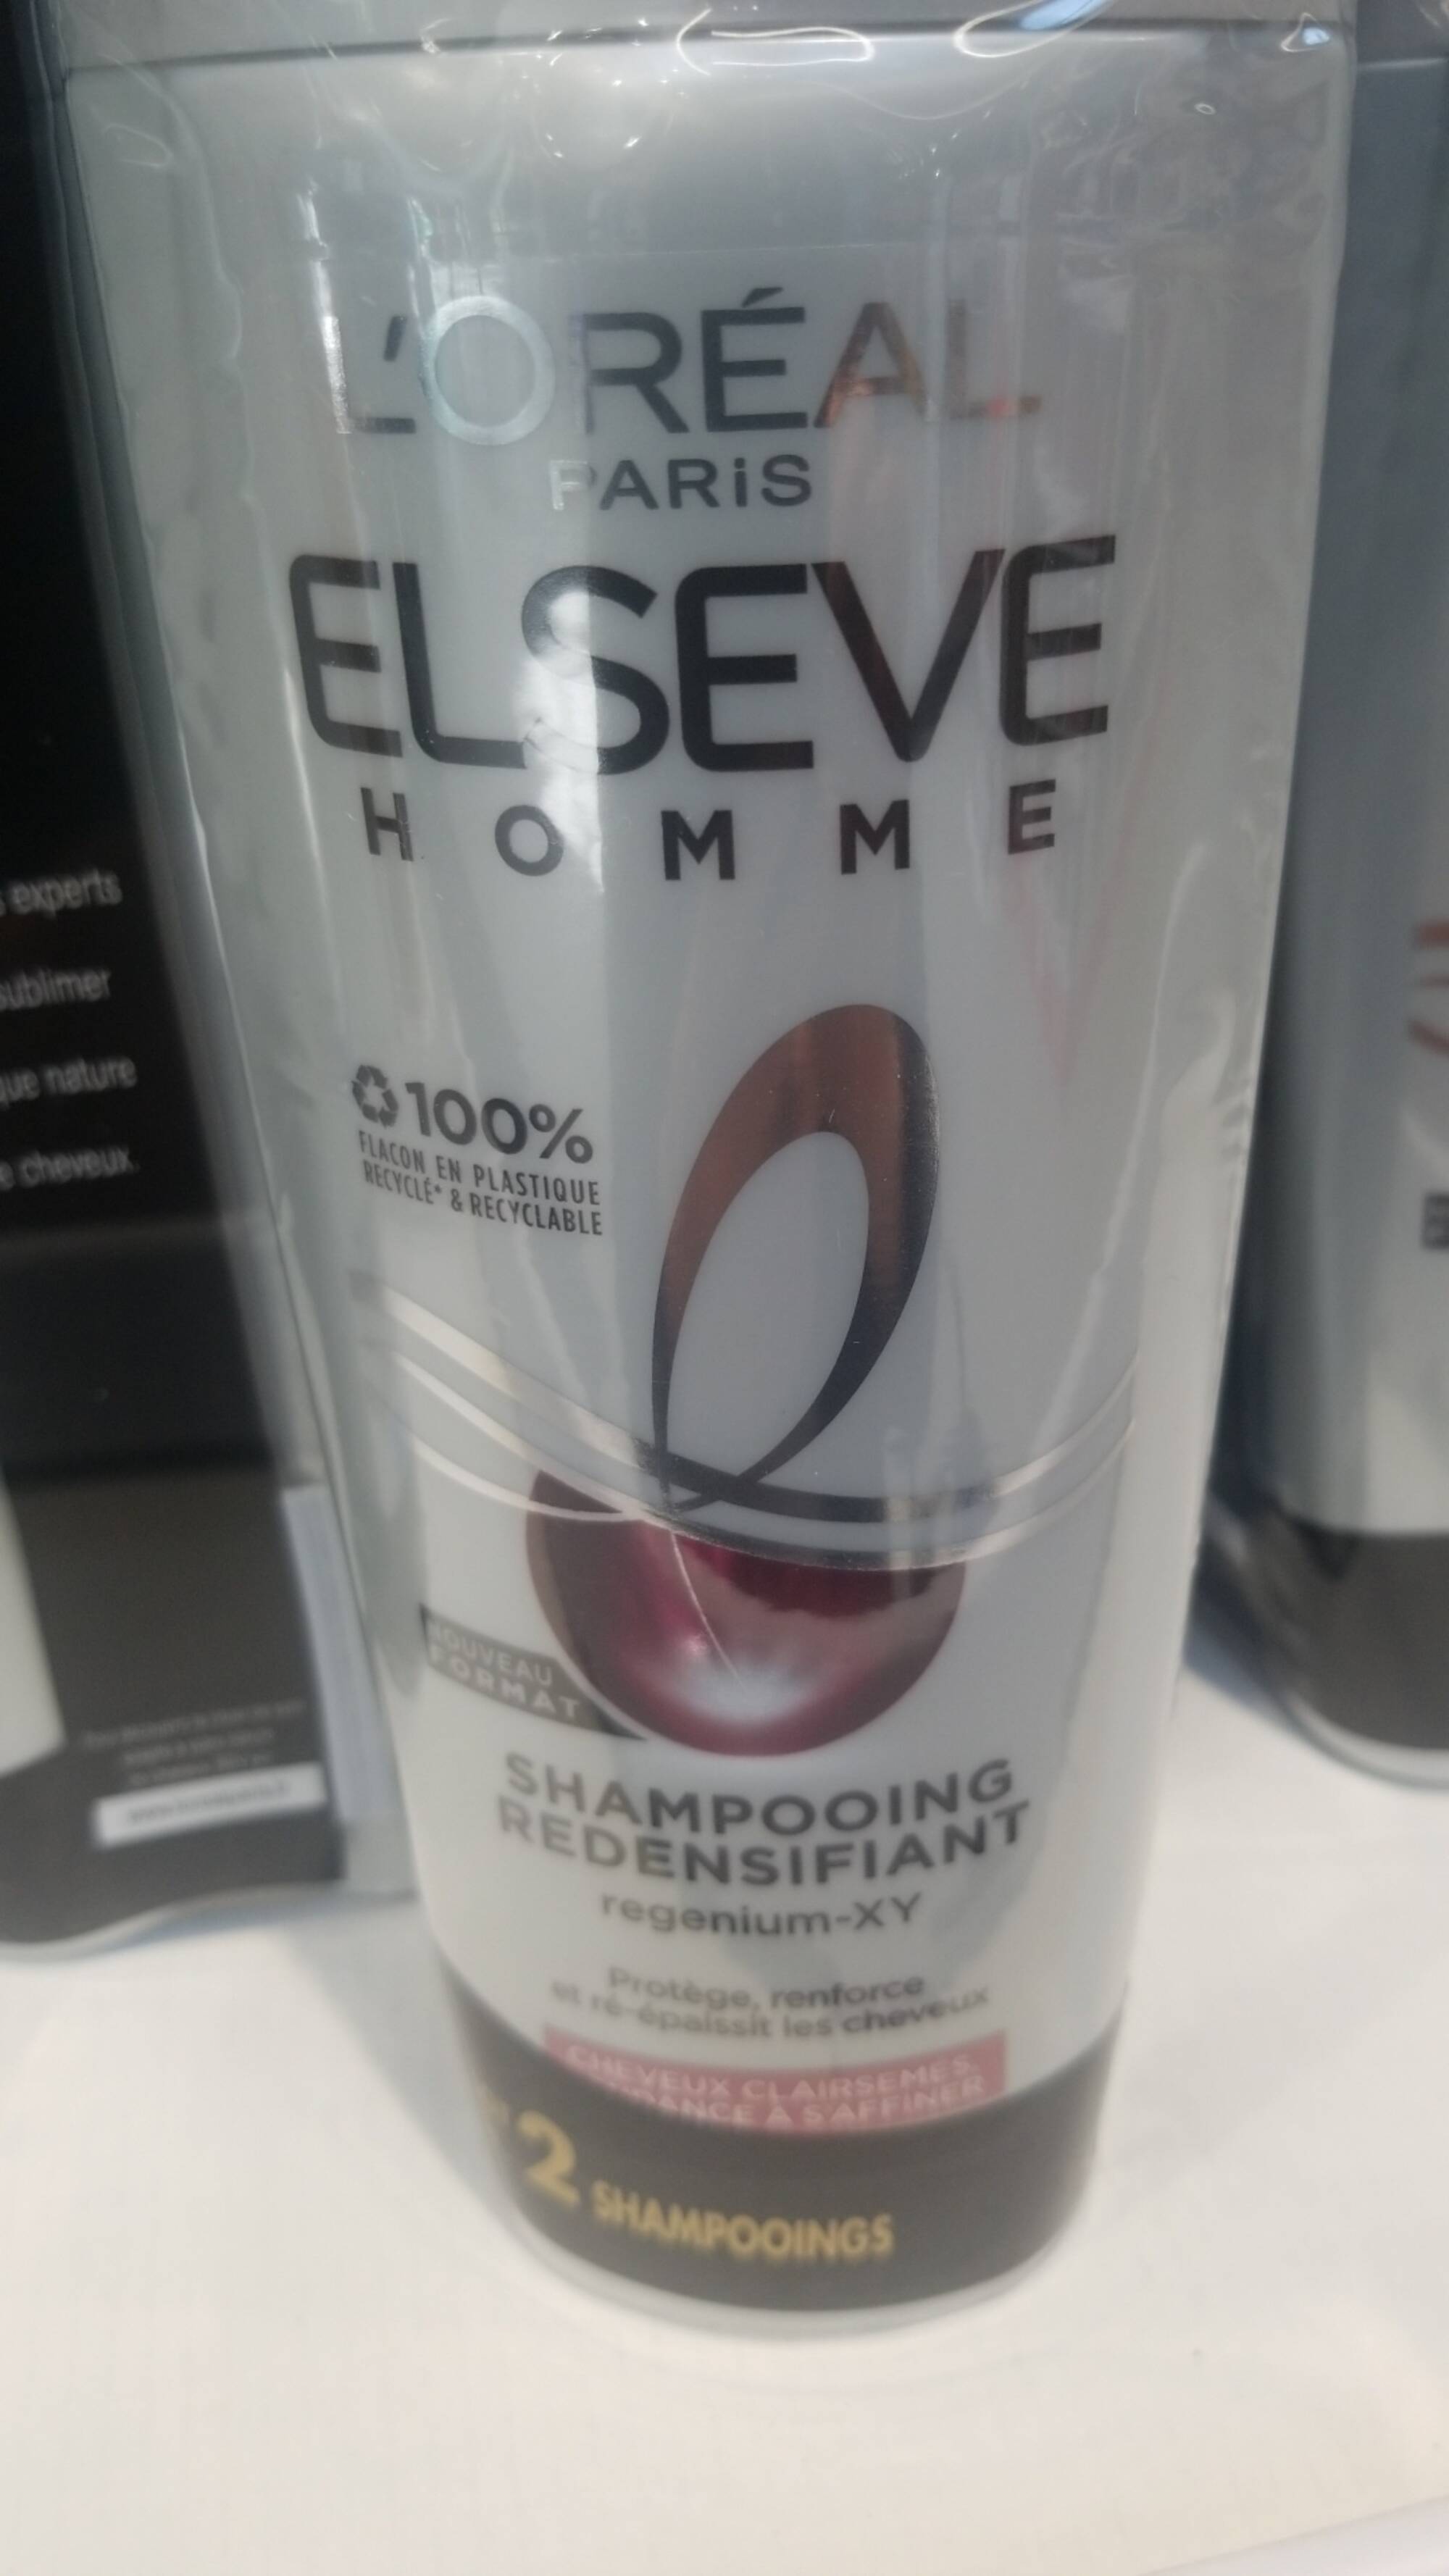 L'ORÉAL - Elseve homme - Shampooing redensifiant